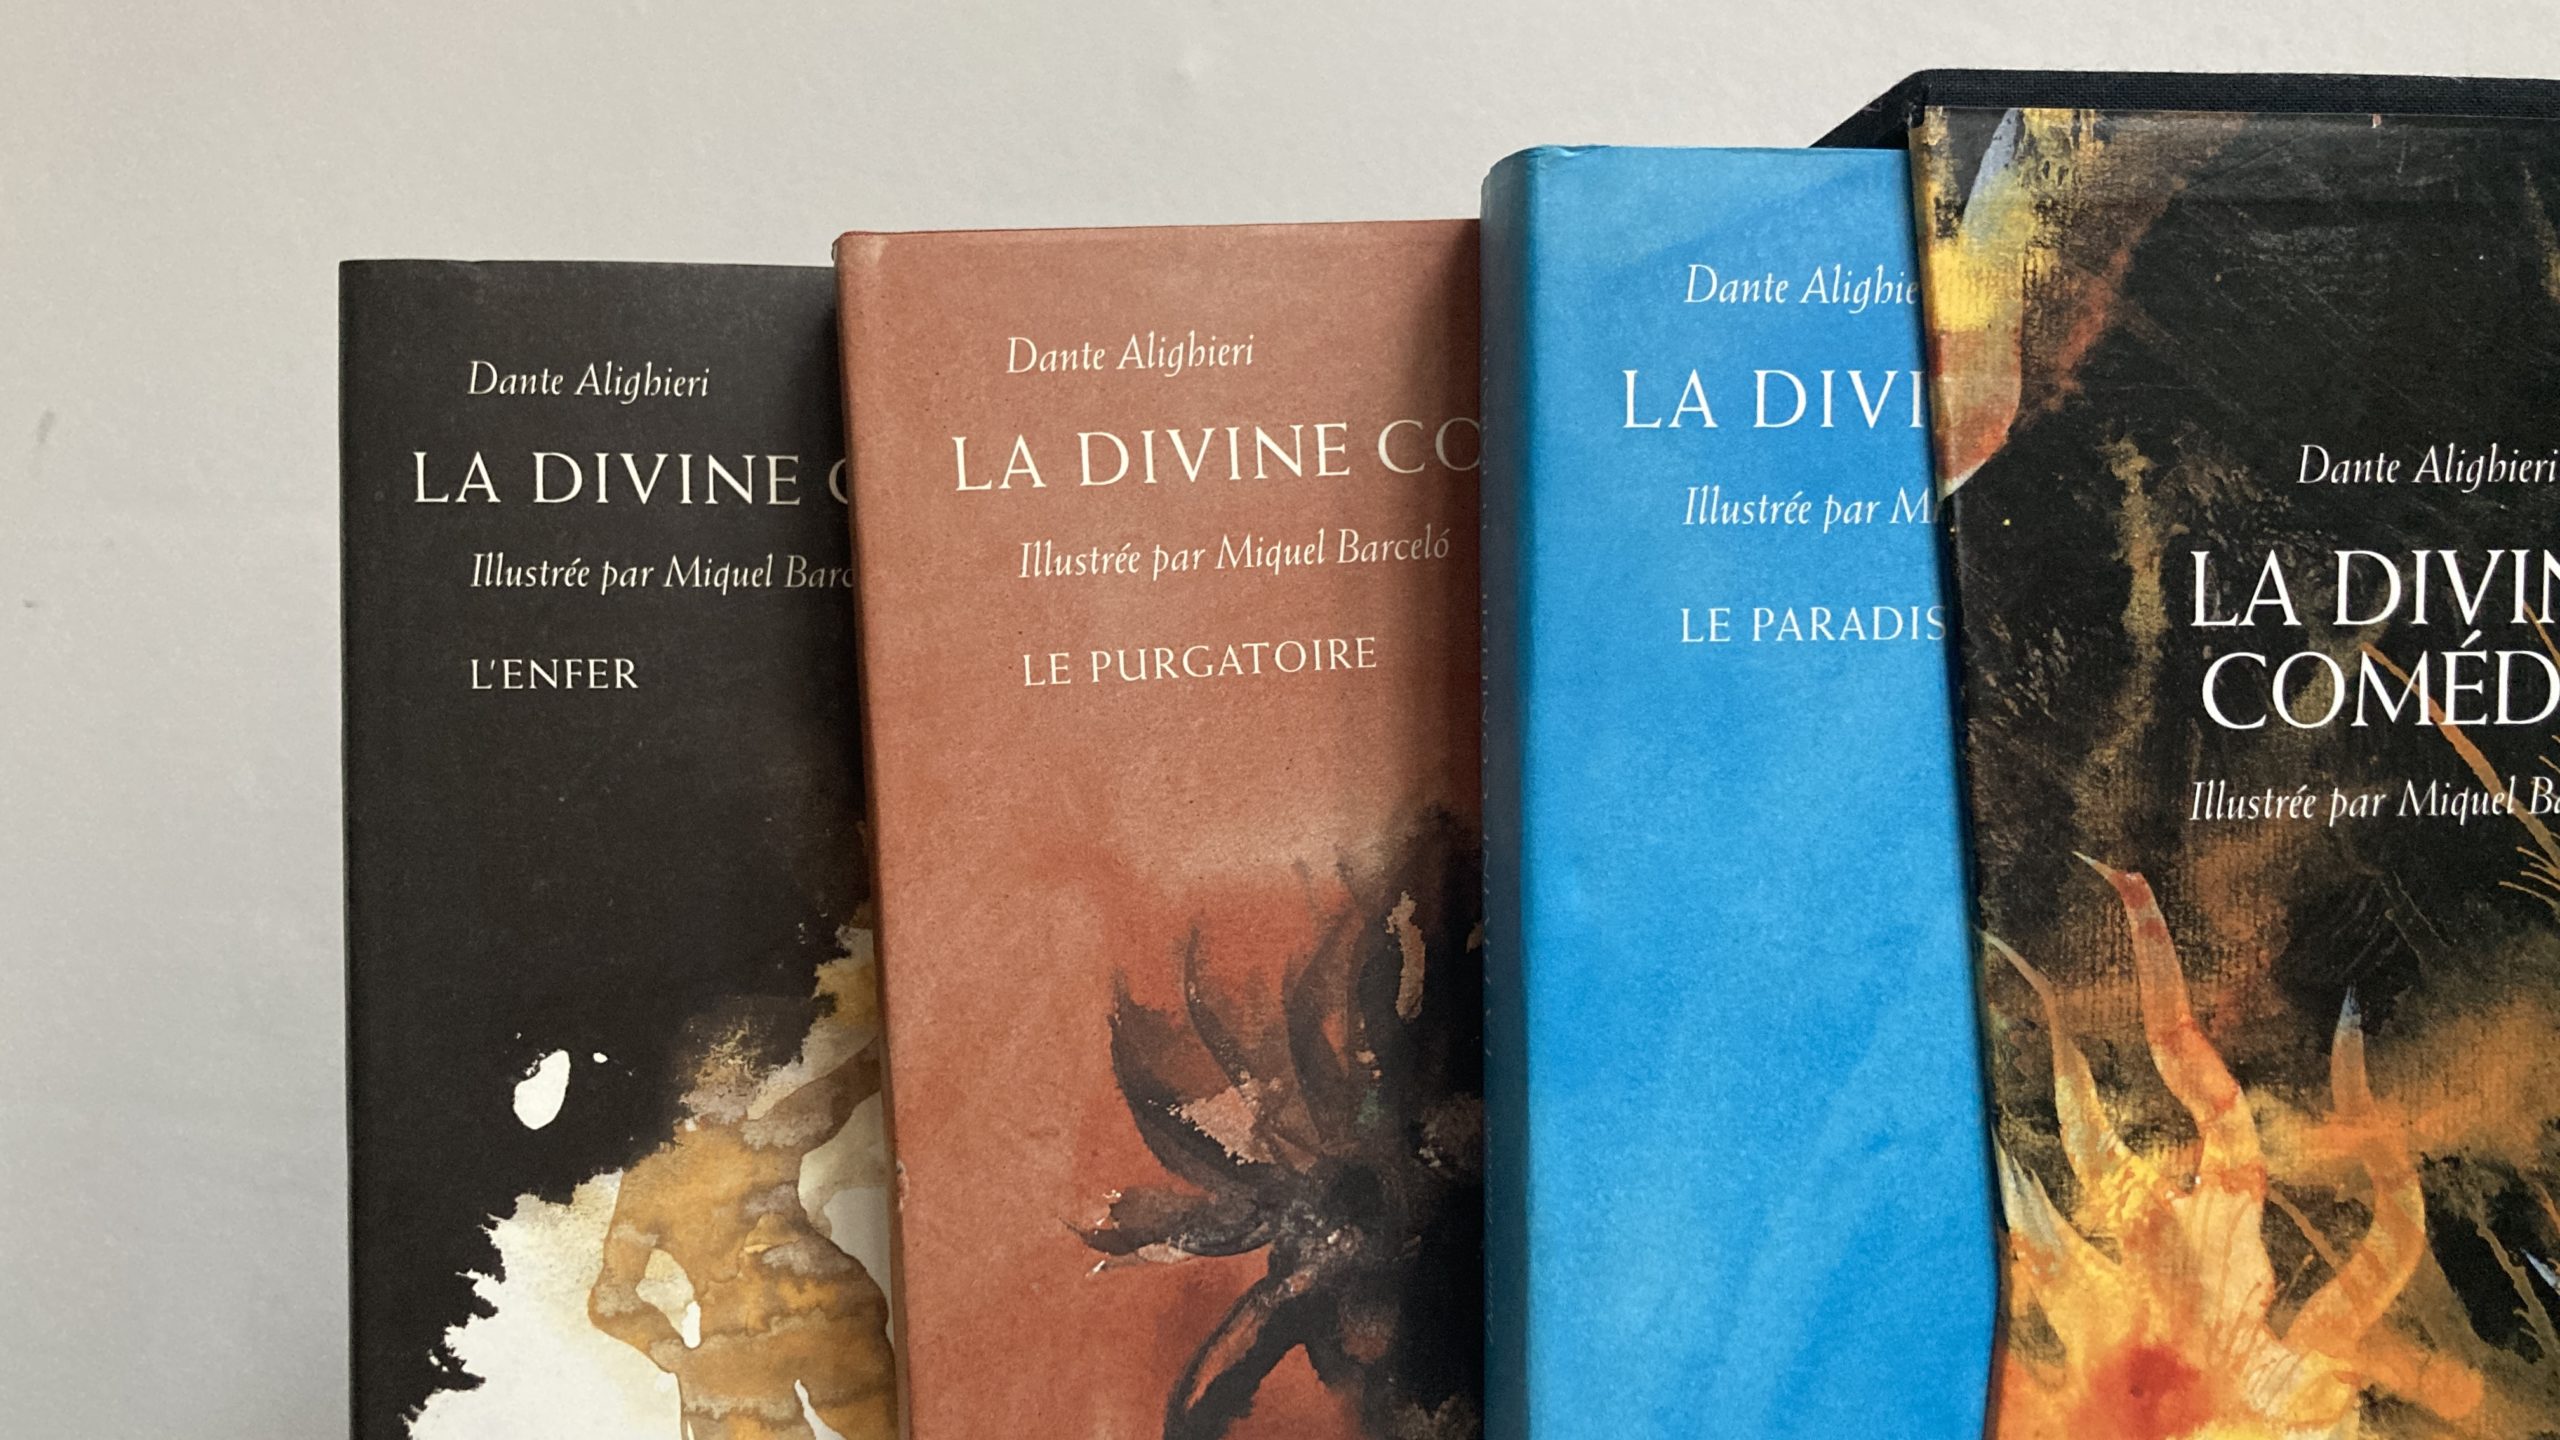 La-divine-comédie-trilogie-dante-alighier-par-miquel-Barcelo-francais-espagnol-aurore-morisse-chestret-5-2